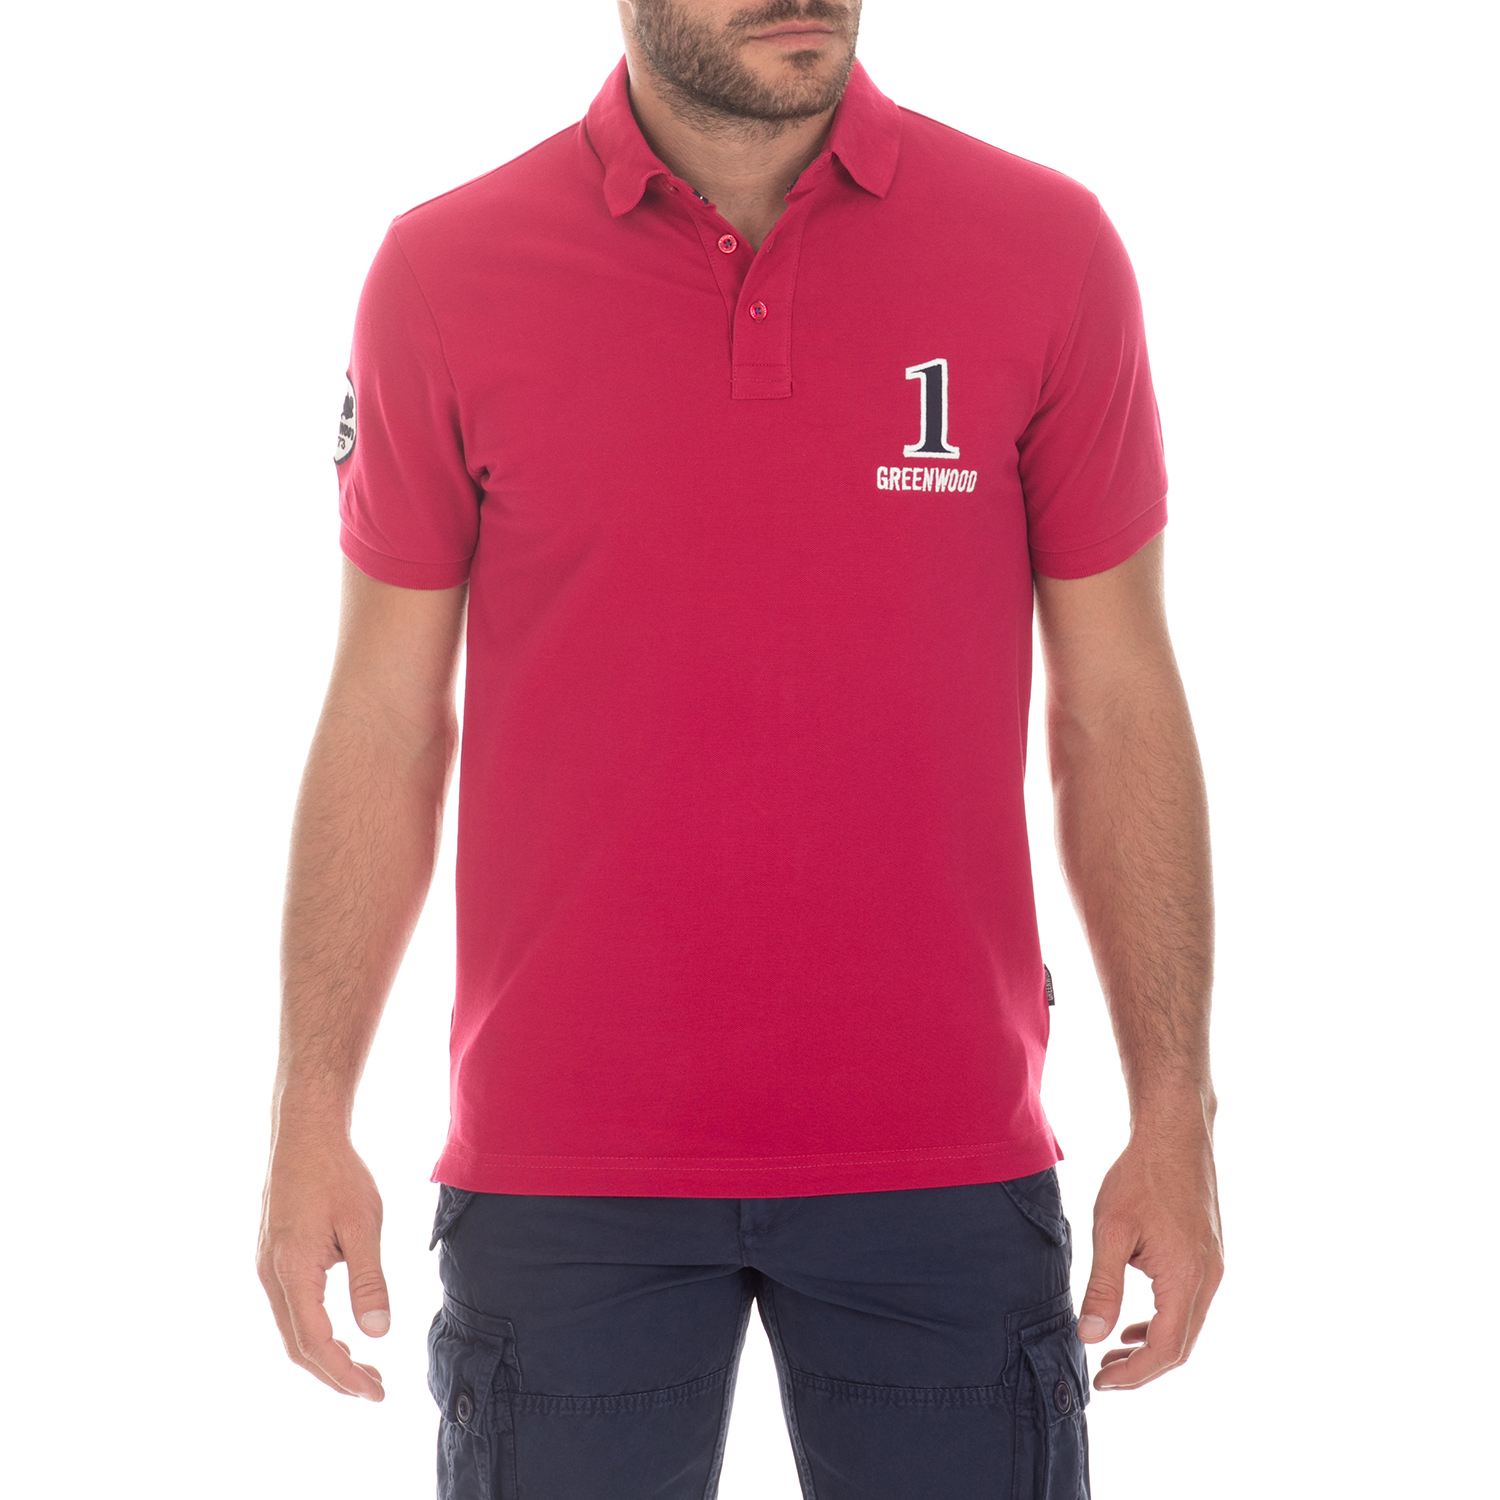 Ανδρικά/Ρούχα/Μπλούζες/Πόλο GREENWOOD - Ανδρική μπλούζα GREENWOOD κόκκινη